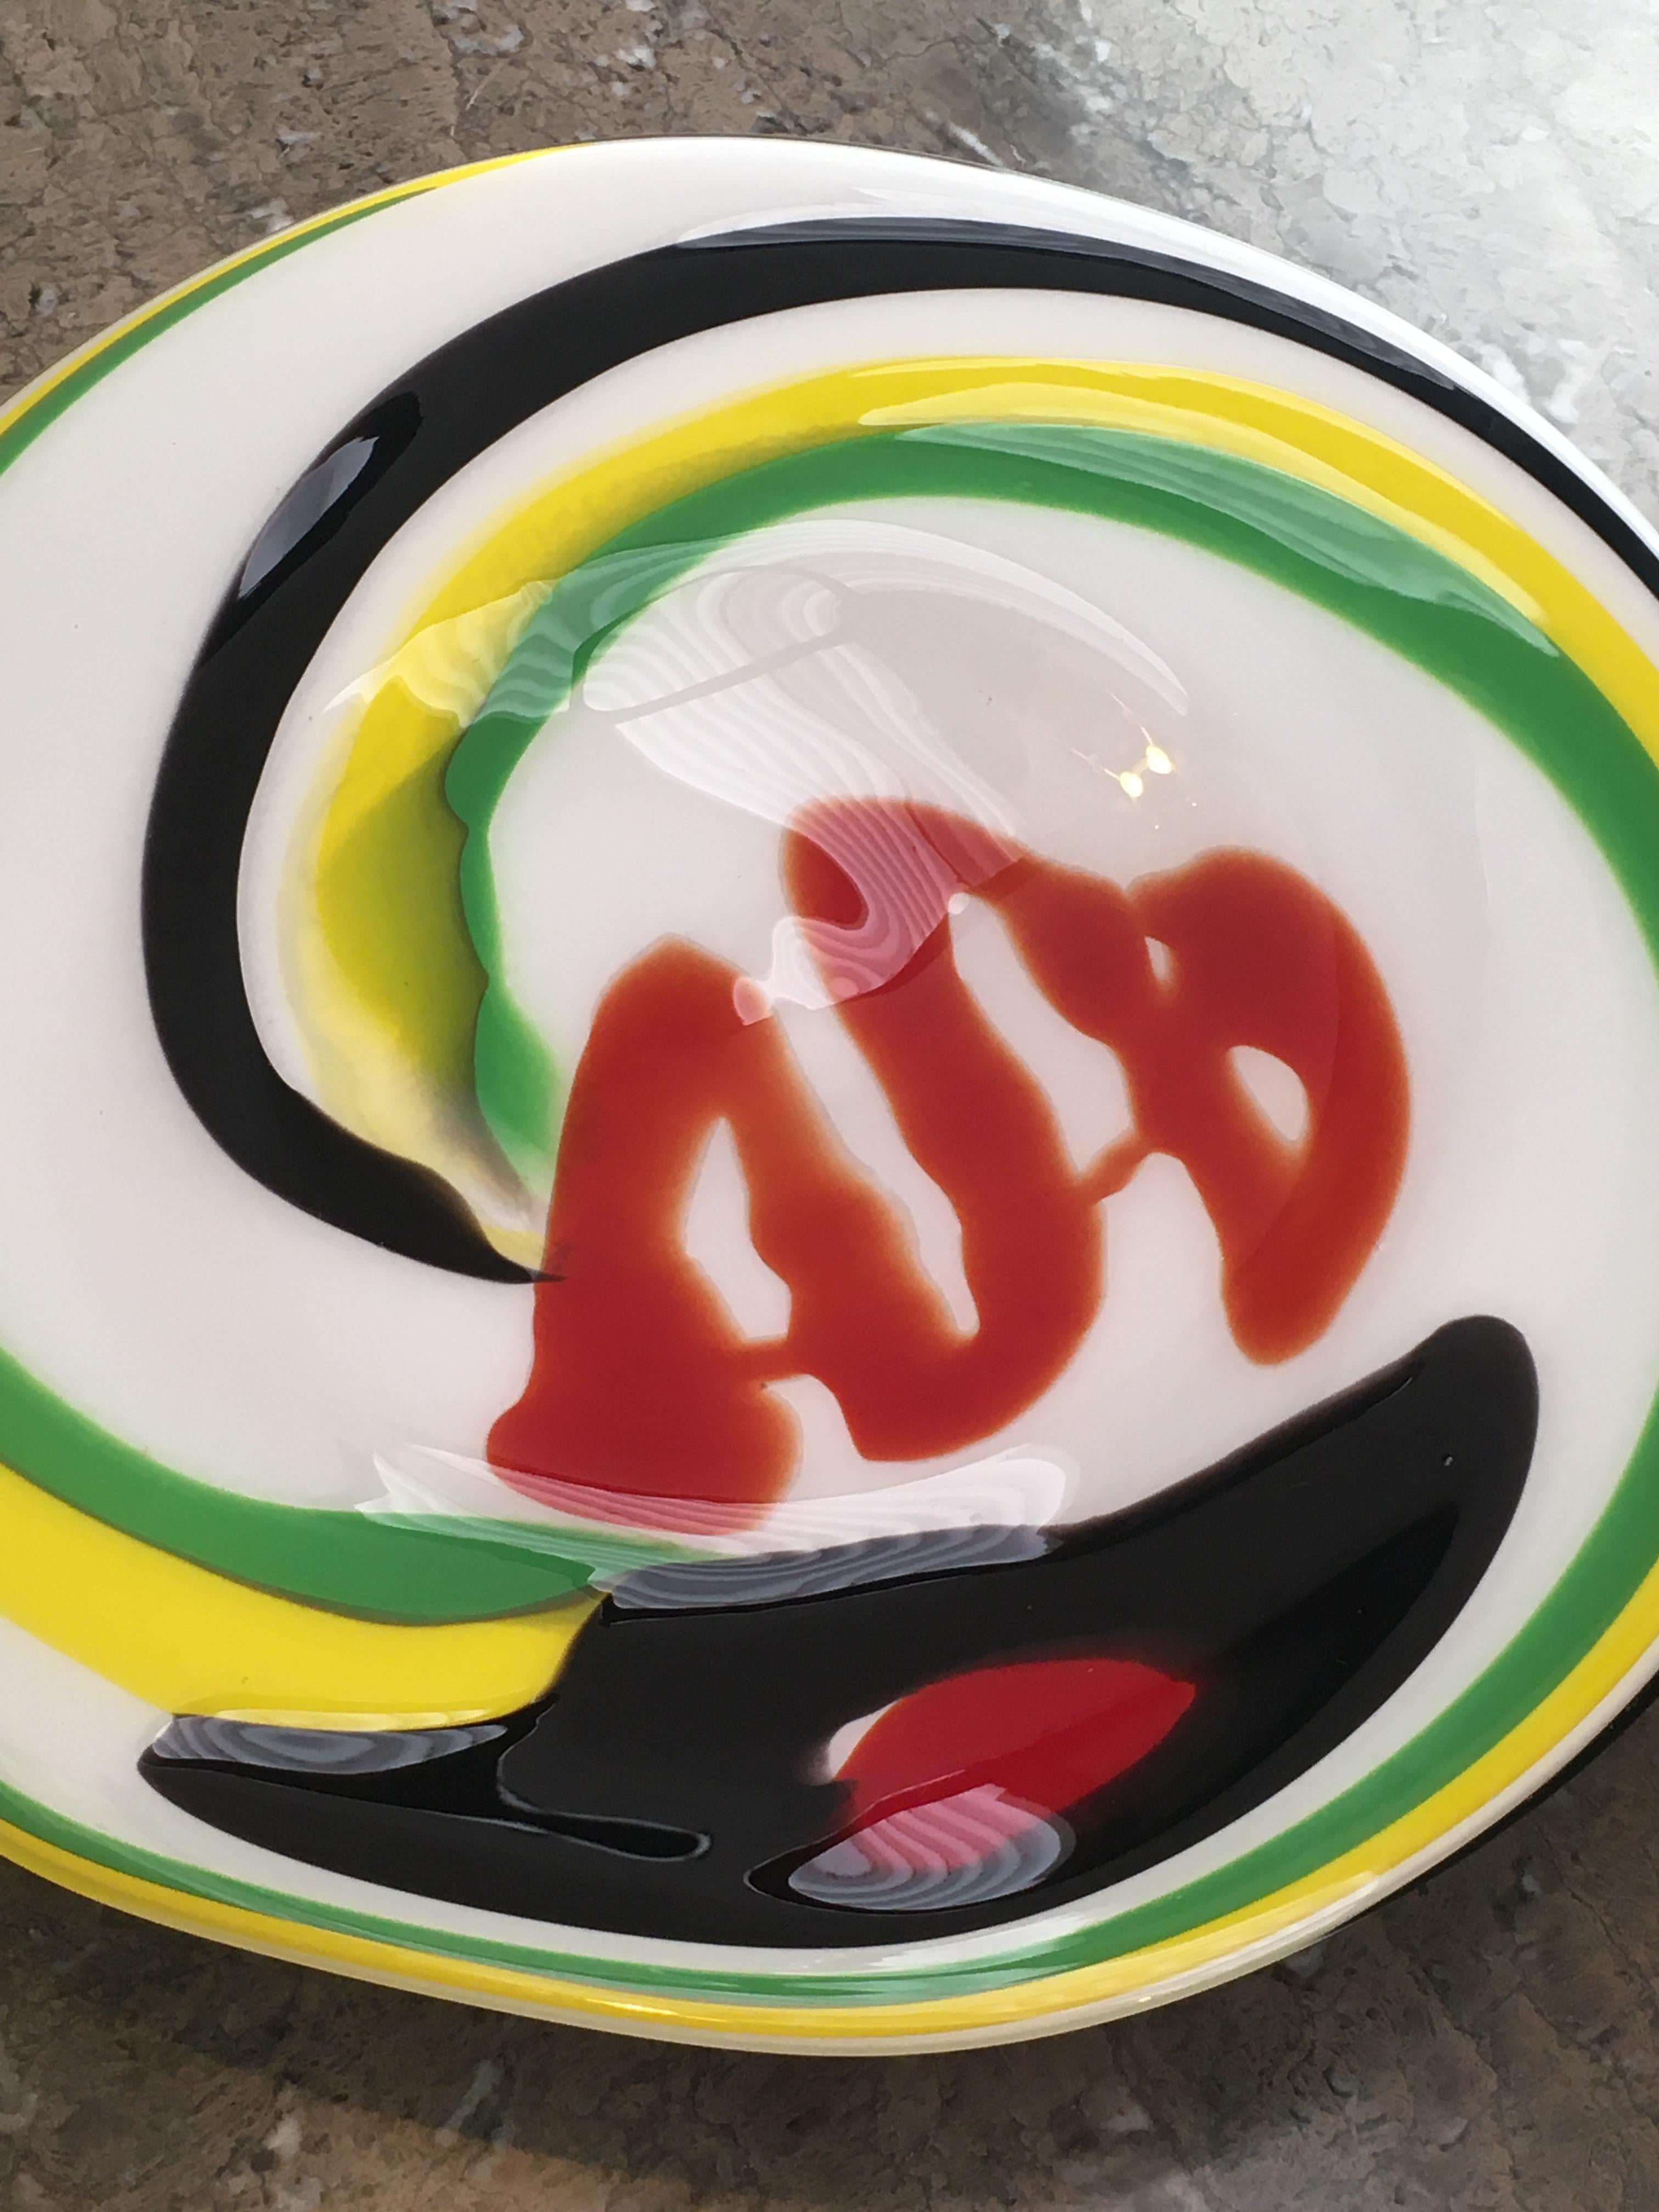 Simplemente ¡guau! Un enorme plato de Kaneaki Fujimori, magníficamente colorido. 

Se mostrará igual de bien de pie, colgado o plano (nosotros lo preferimos plano porque así se acentúa su generoso tamaño).

Nos encanta el blanco impactante del